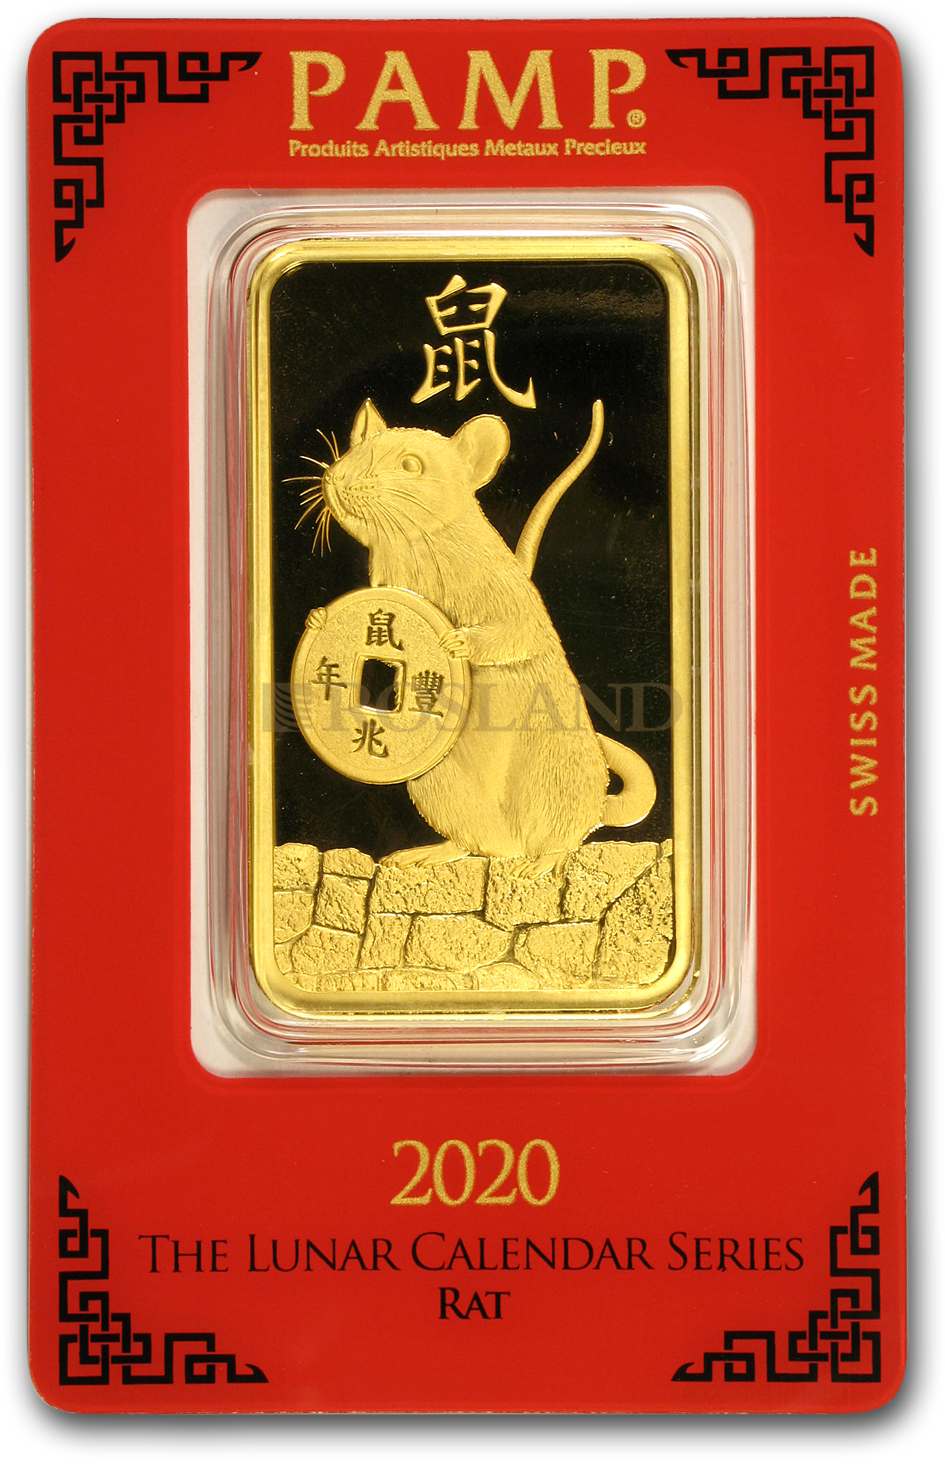 100 Gramm Goldbarren PAMP Lunar Jahr der Ratte 2020